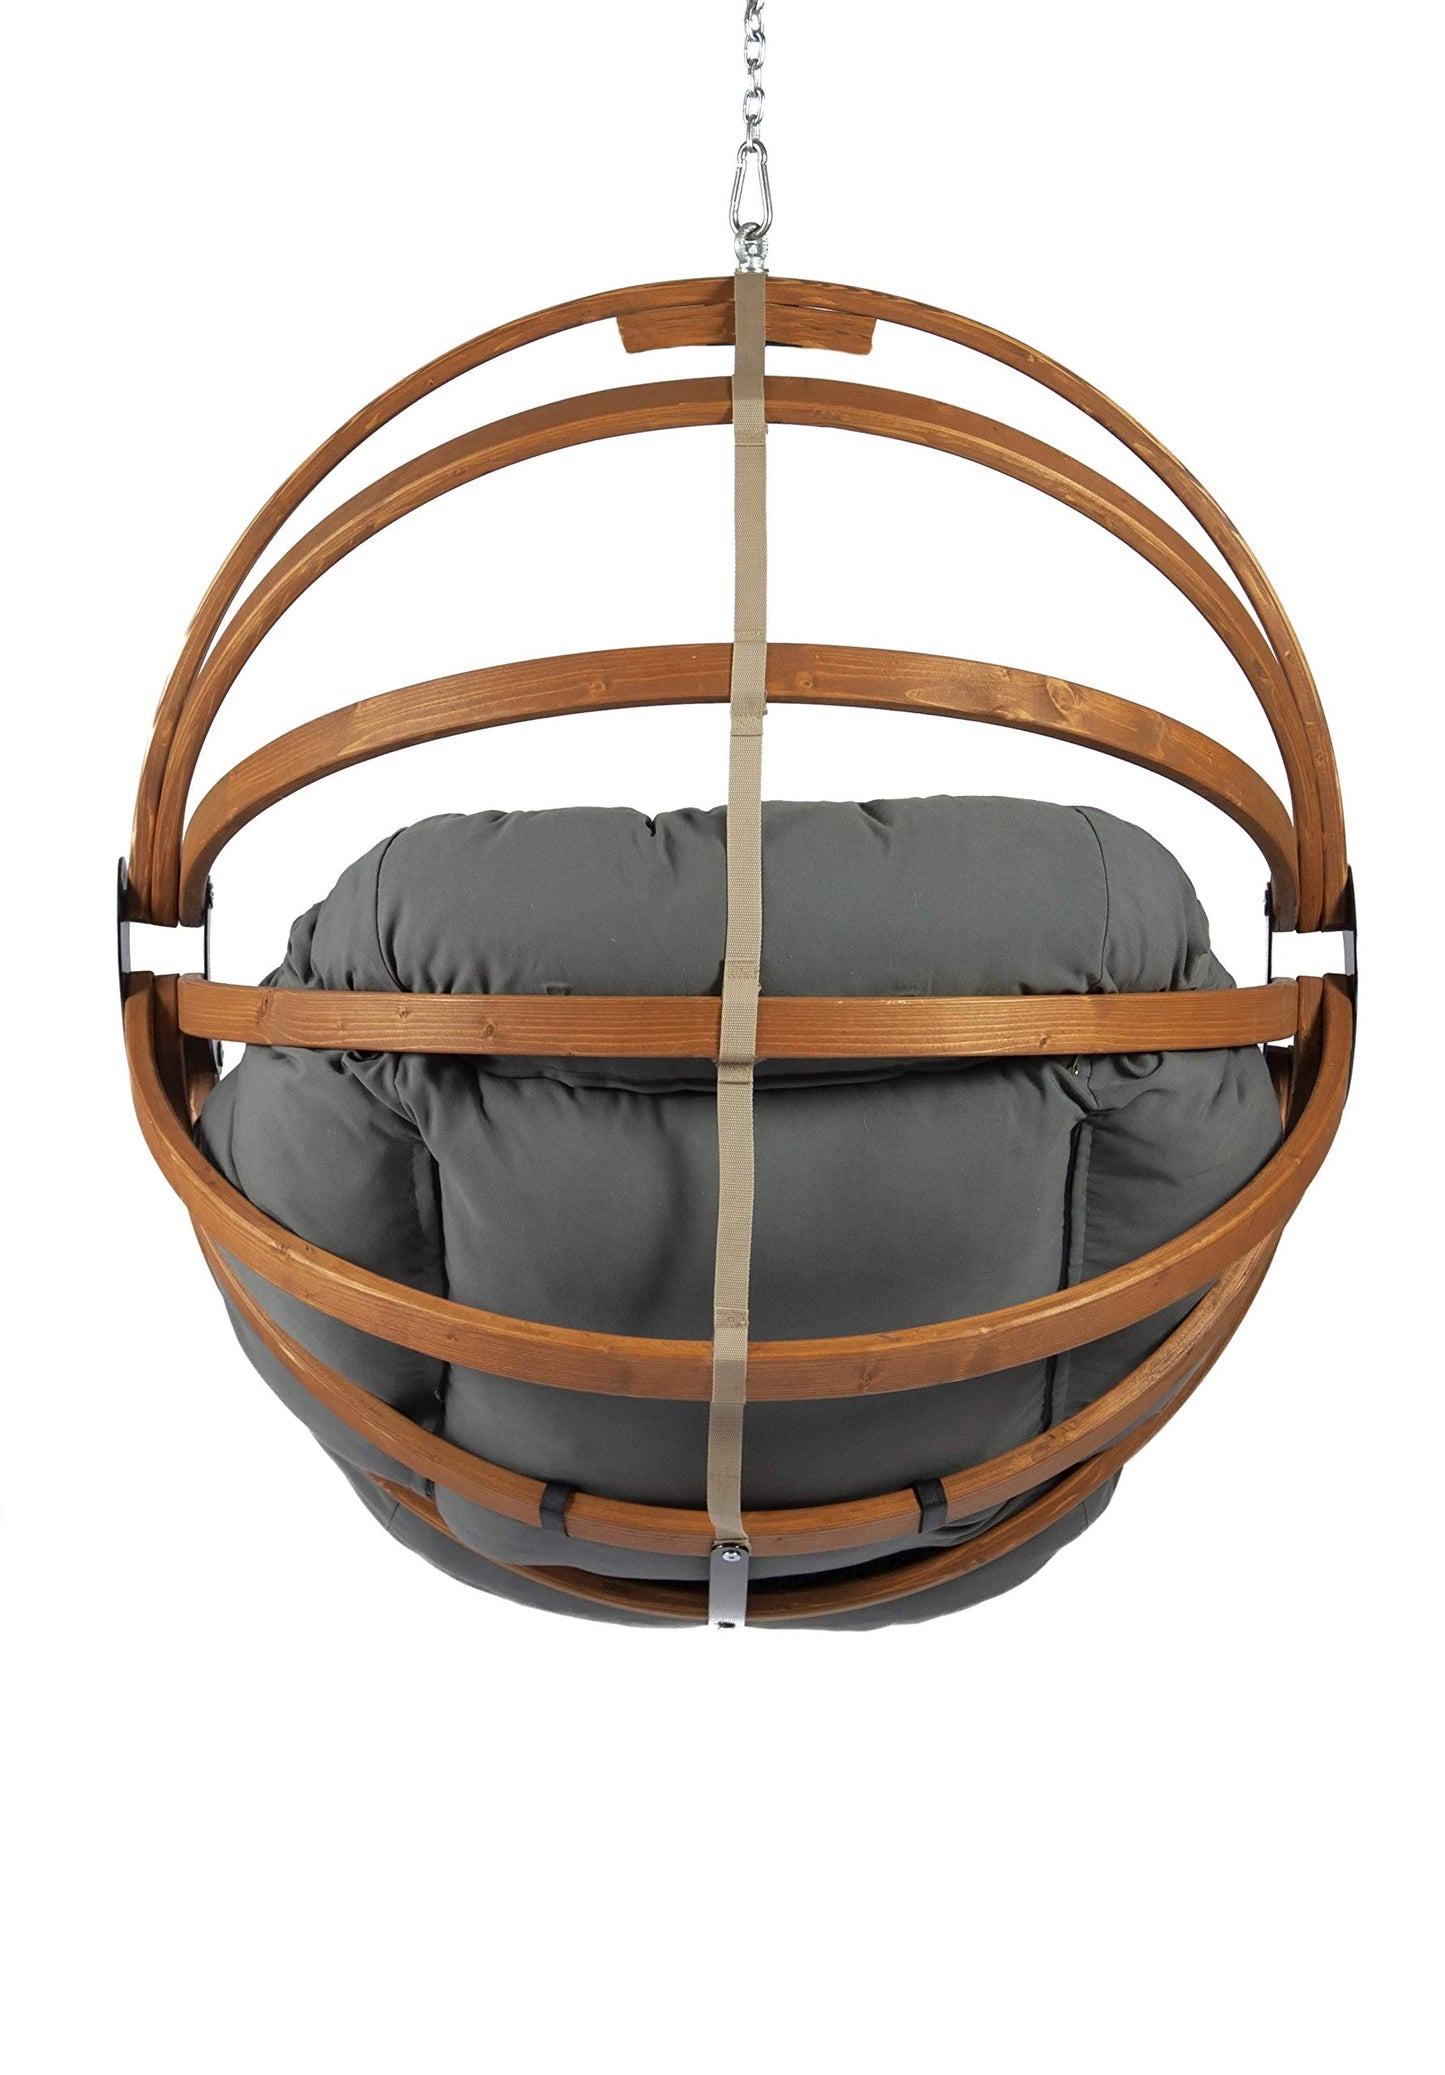 Hammock Basket Chair - Exaco Trading Company